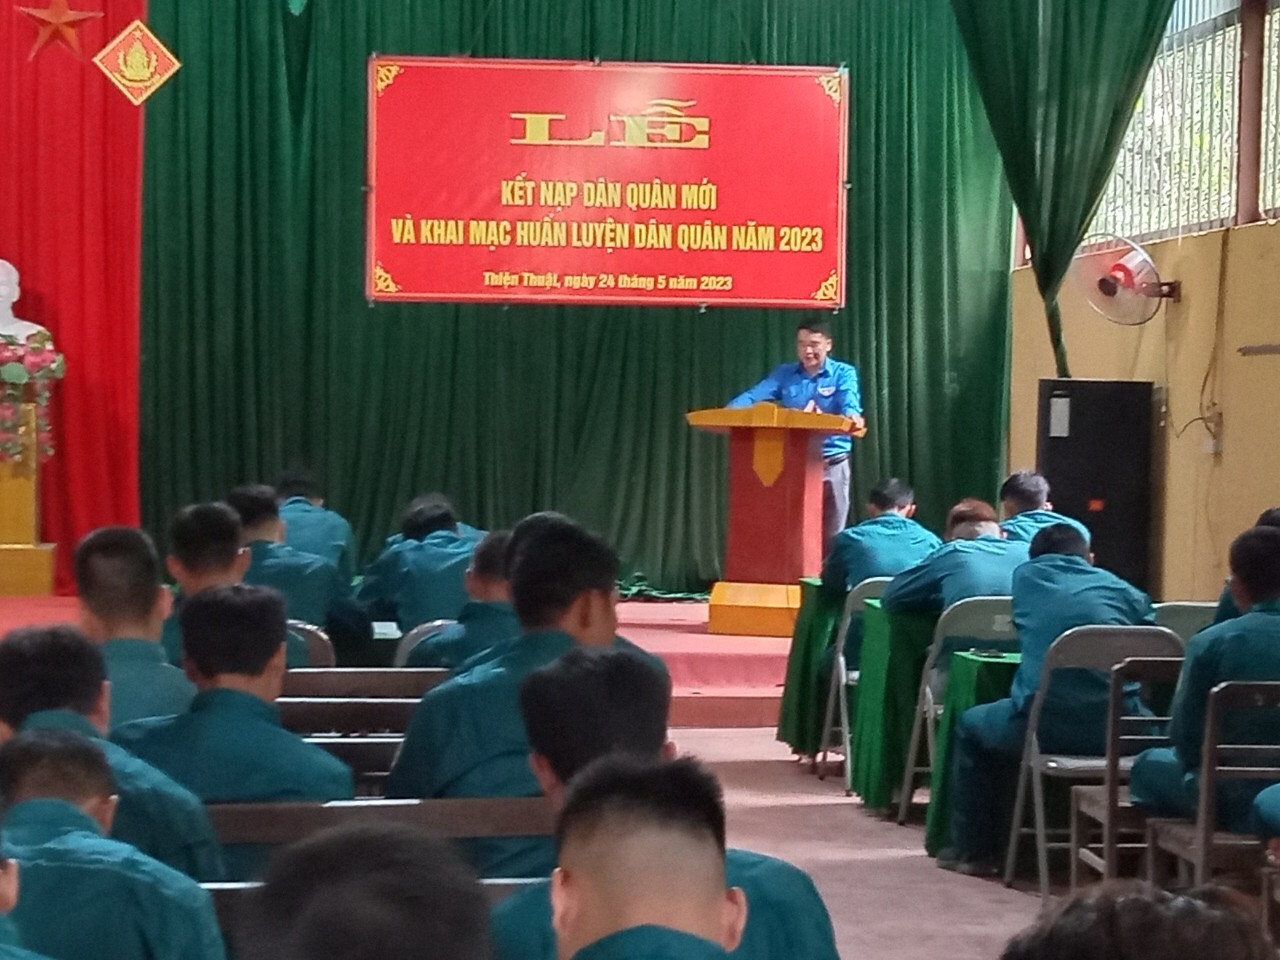 đồng chí Dương Văn Chính lên lớp nội dung chính trị